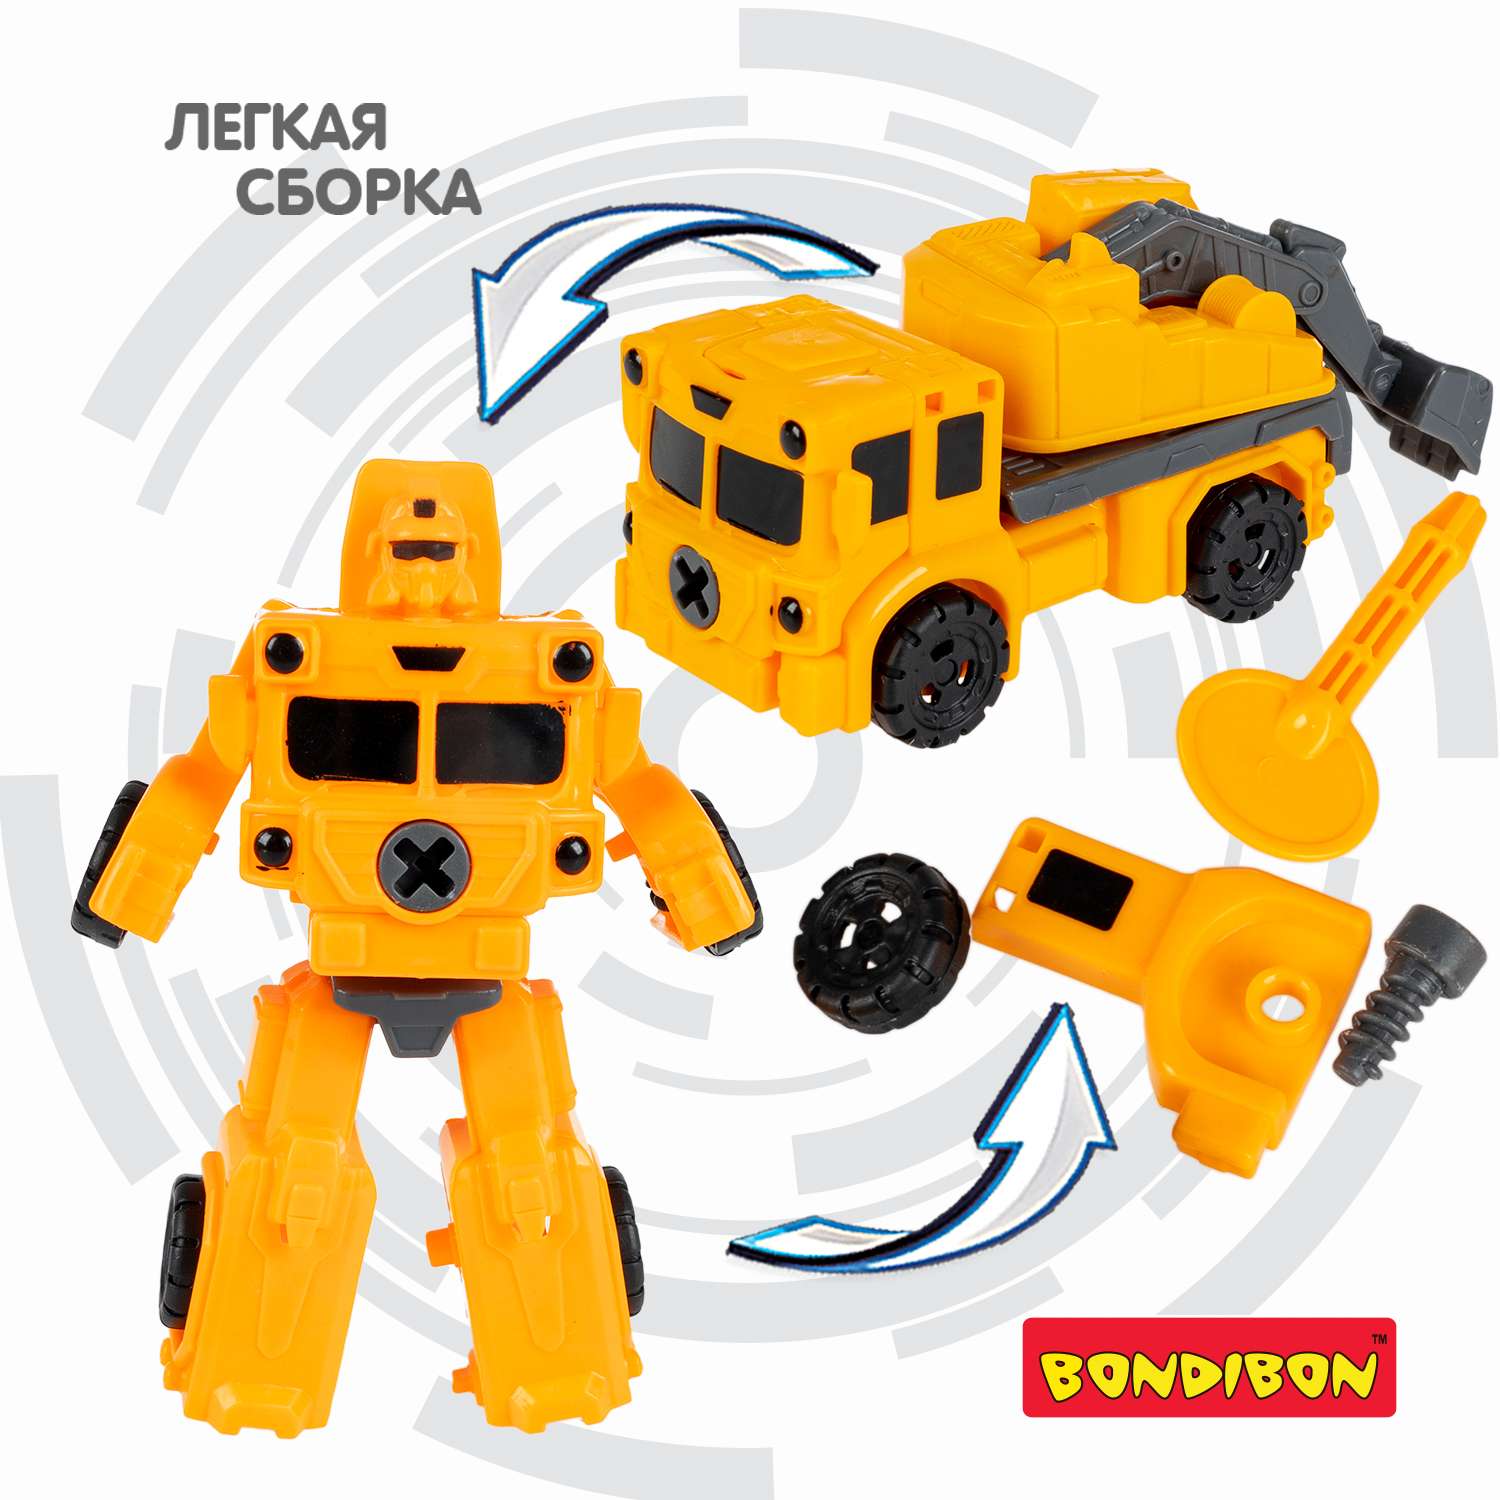 Трансформер BONDIBON bondibot 2 в 1 Робот-колесный экскаватор желтого цвета - фото 6